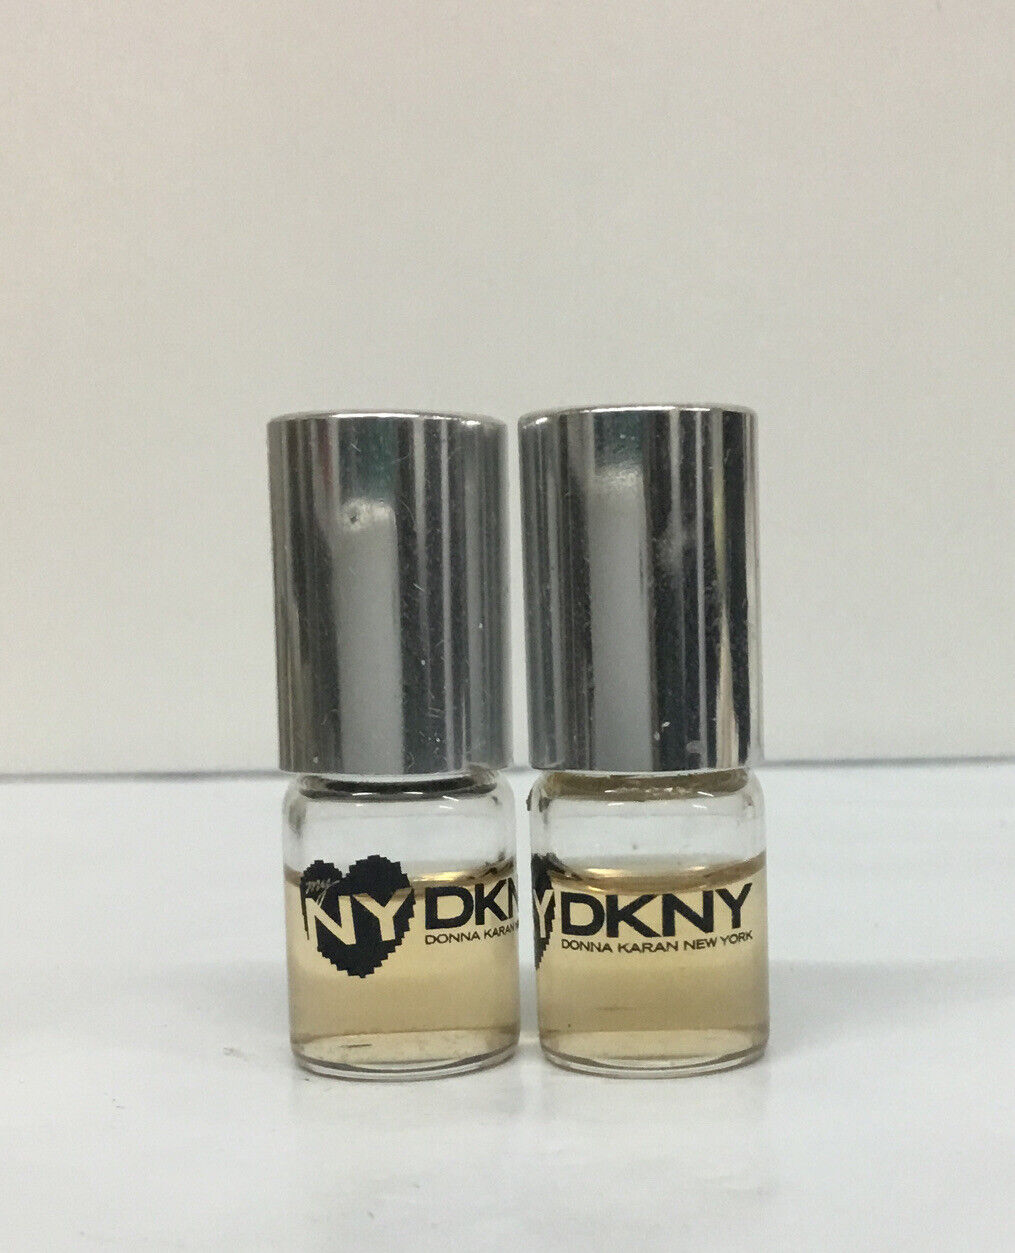 DKNY “MY NY” WOMENS FRAGRANCE ROLLON DELUXE SAMPLE .06 fl oz 